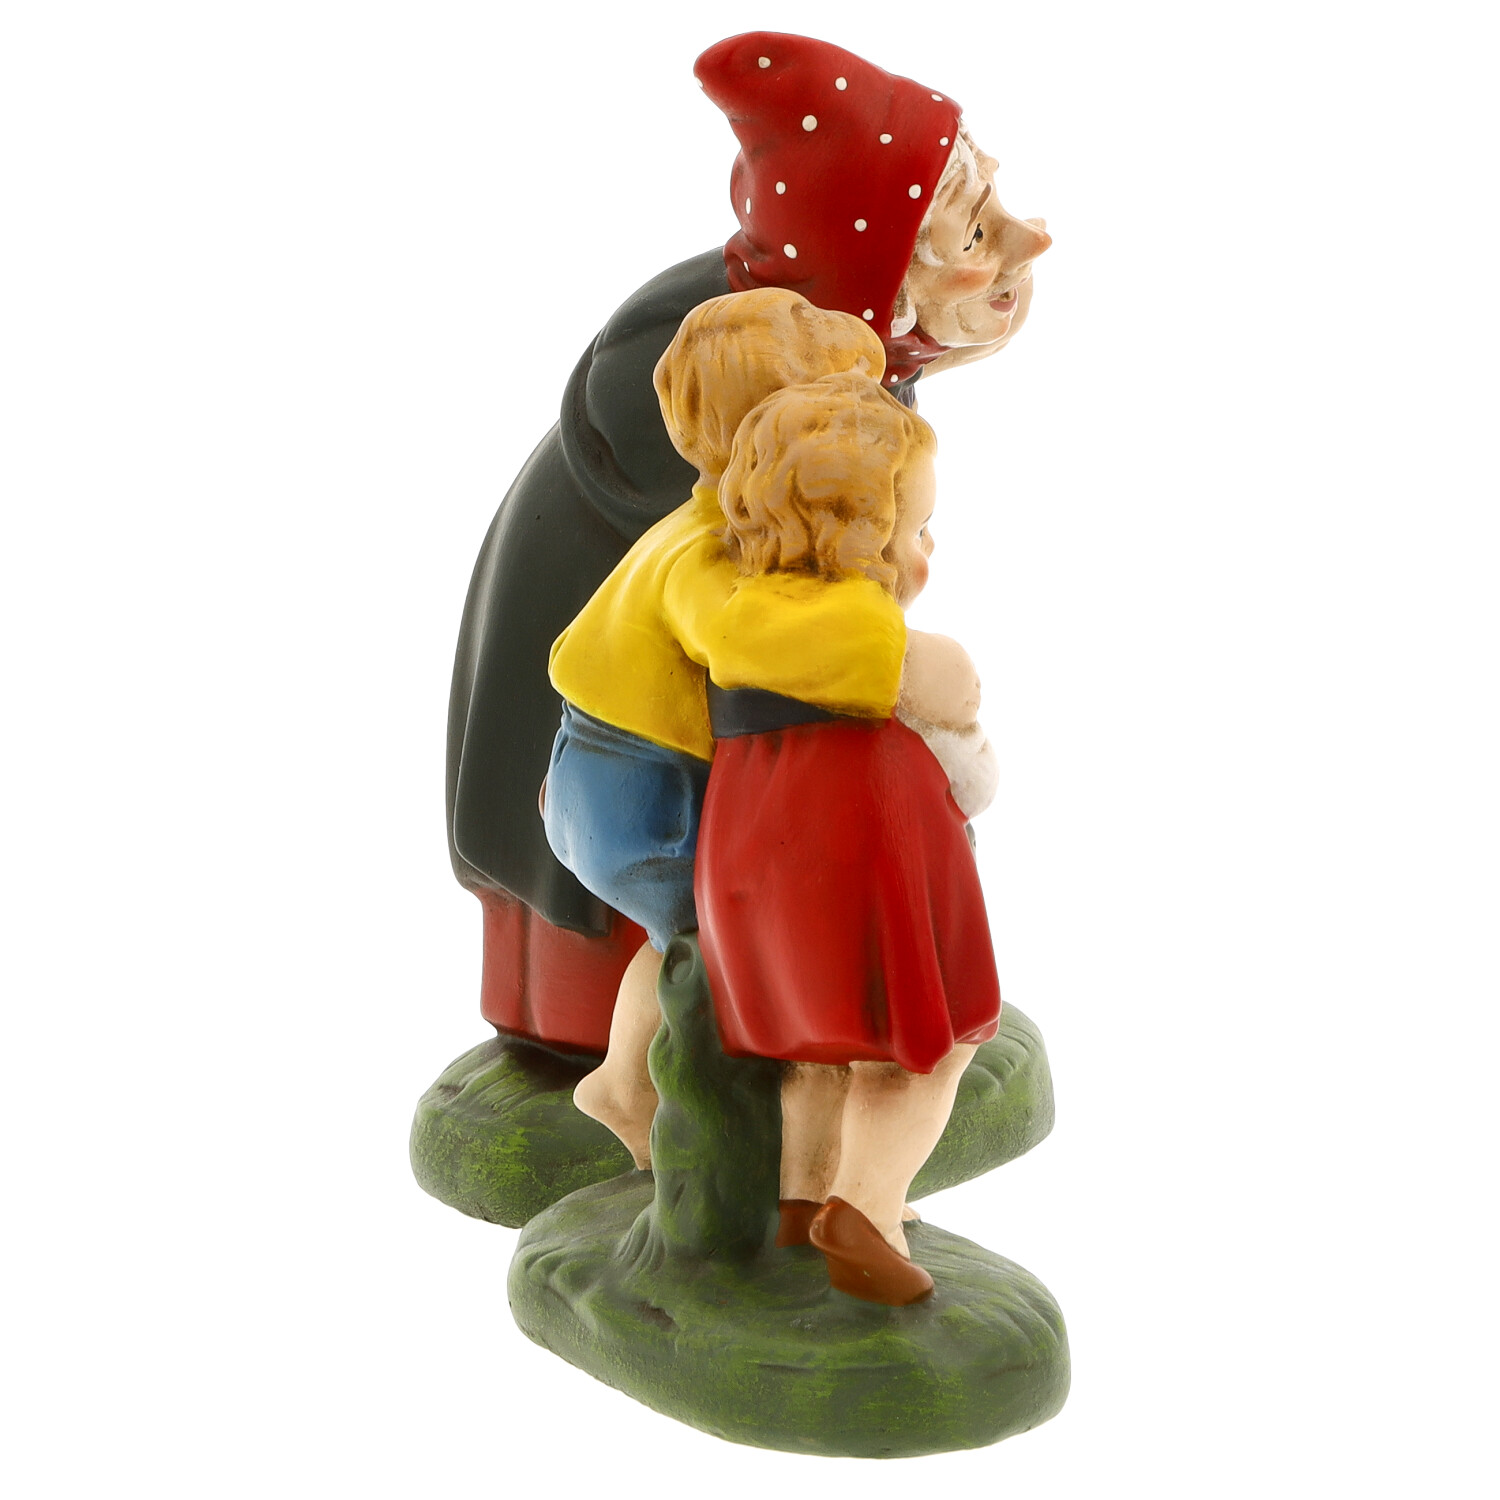 Hänsel und Gretel mit Hexe - Märchenfigur - Marolin Papiermaché - made in Germany